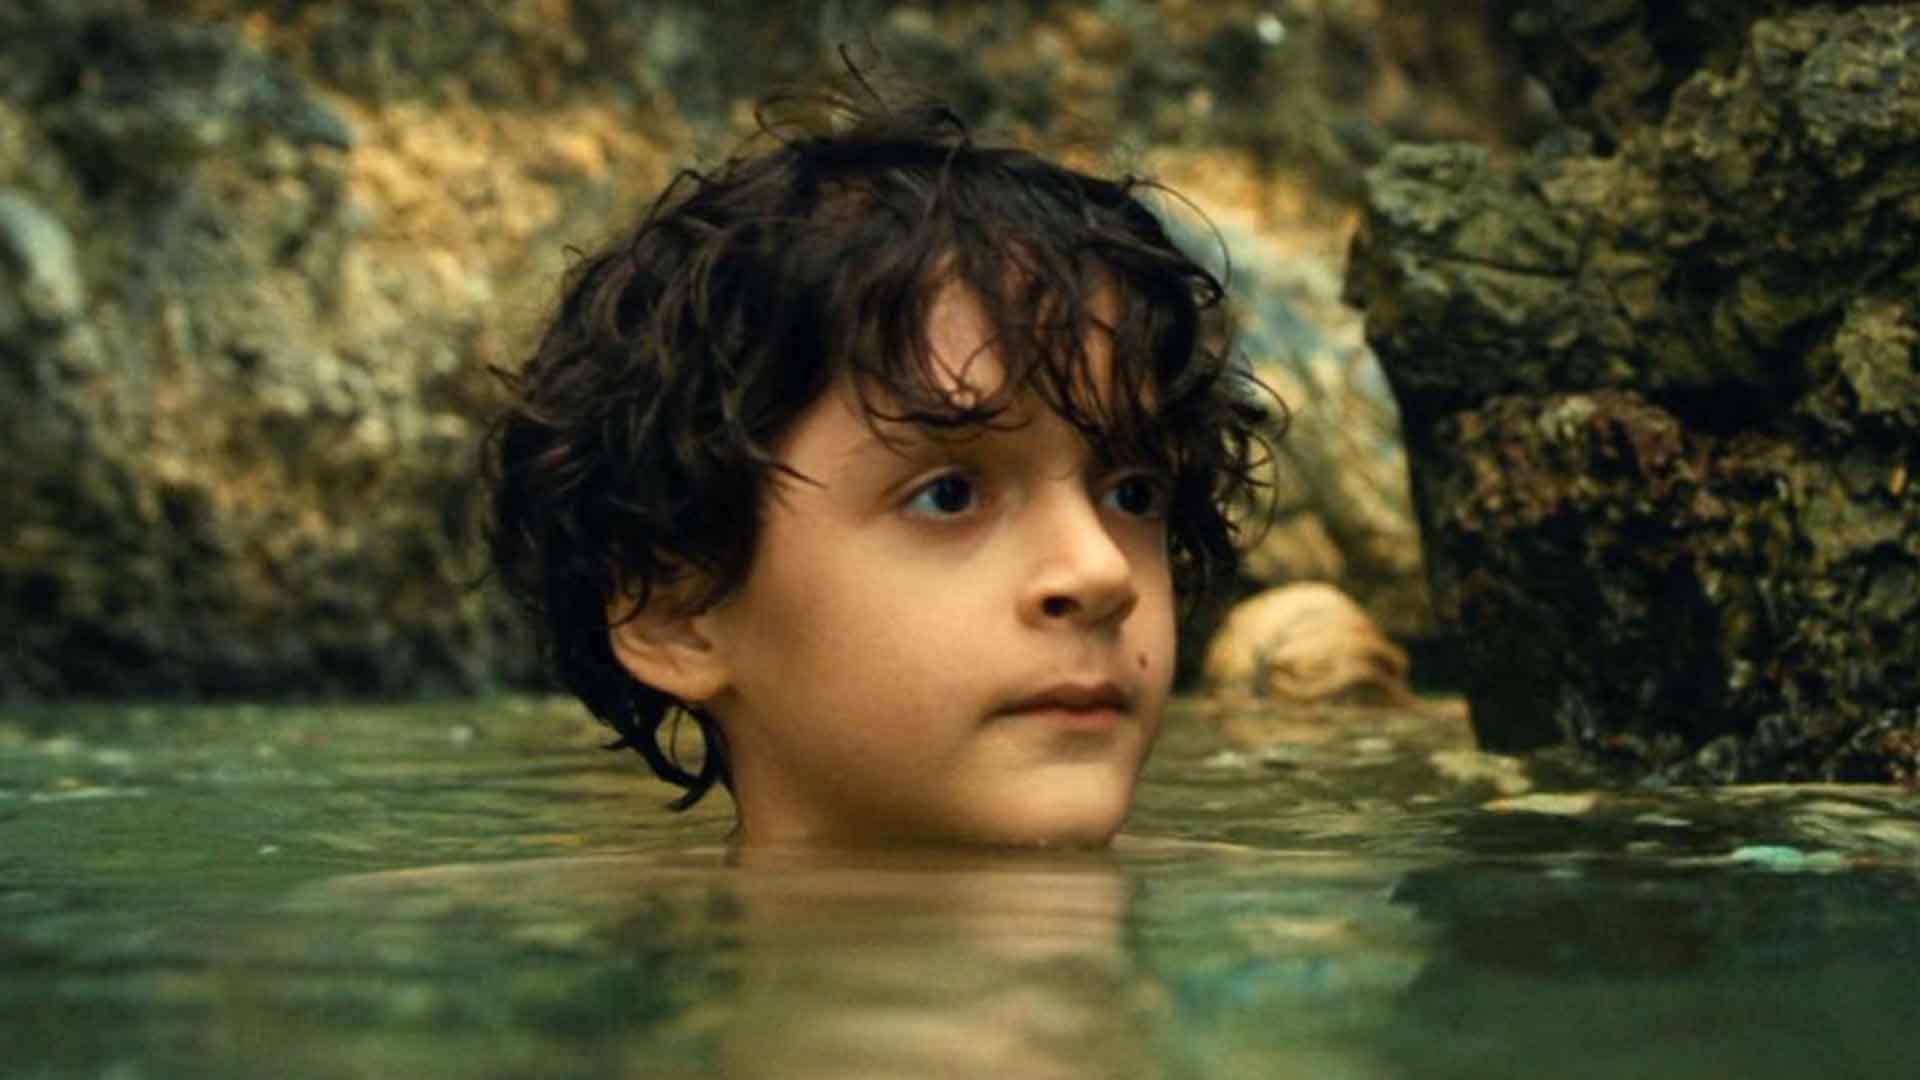 بچه ای در آب در فیلم Old